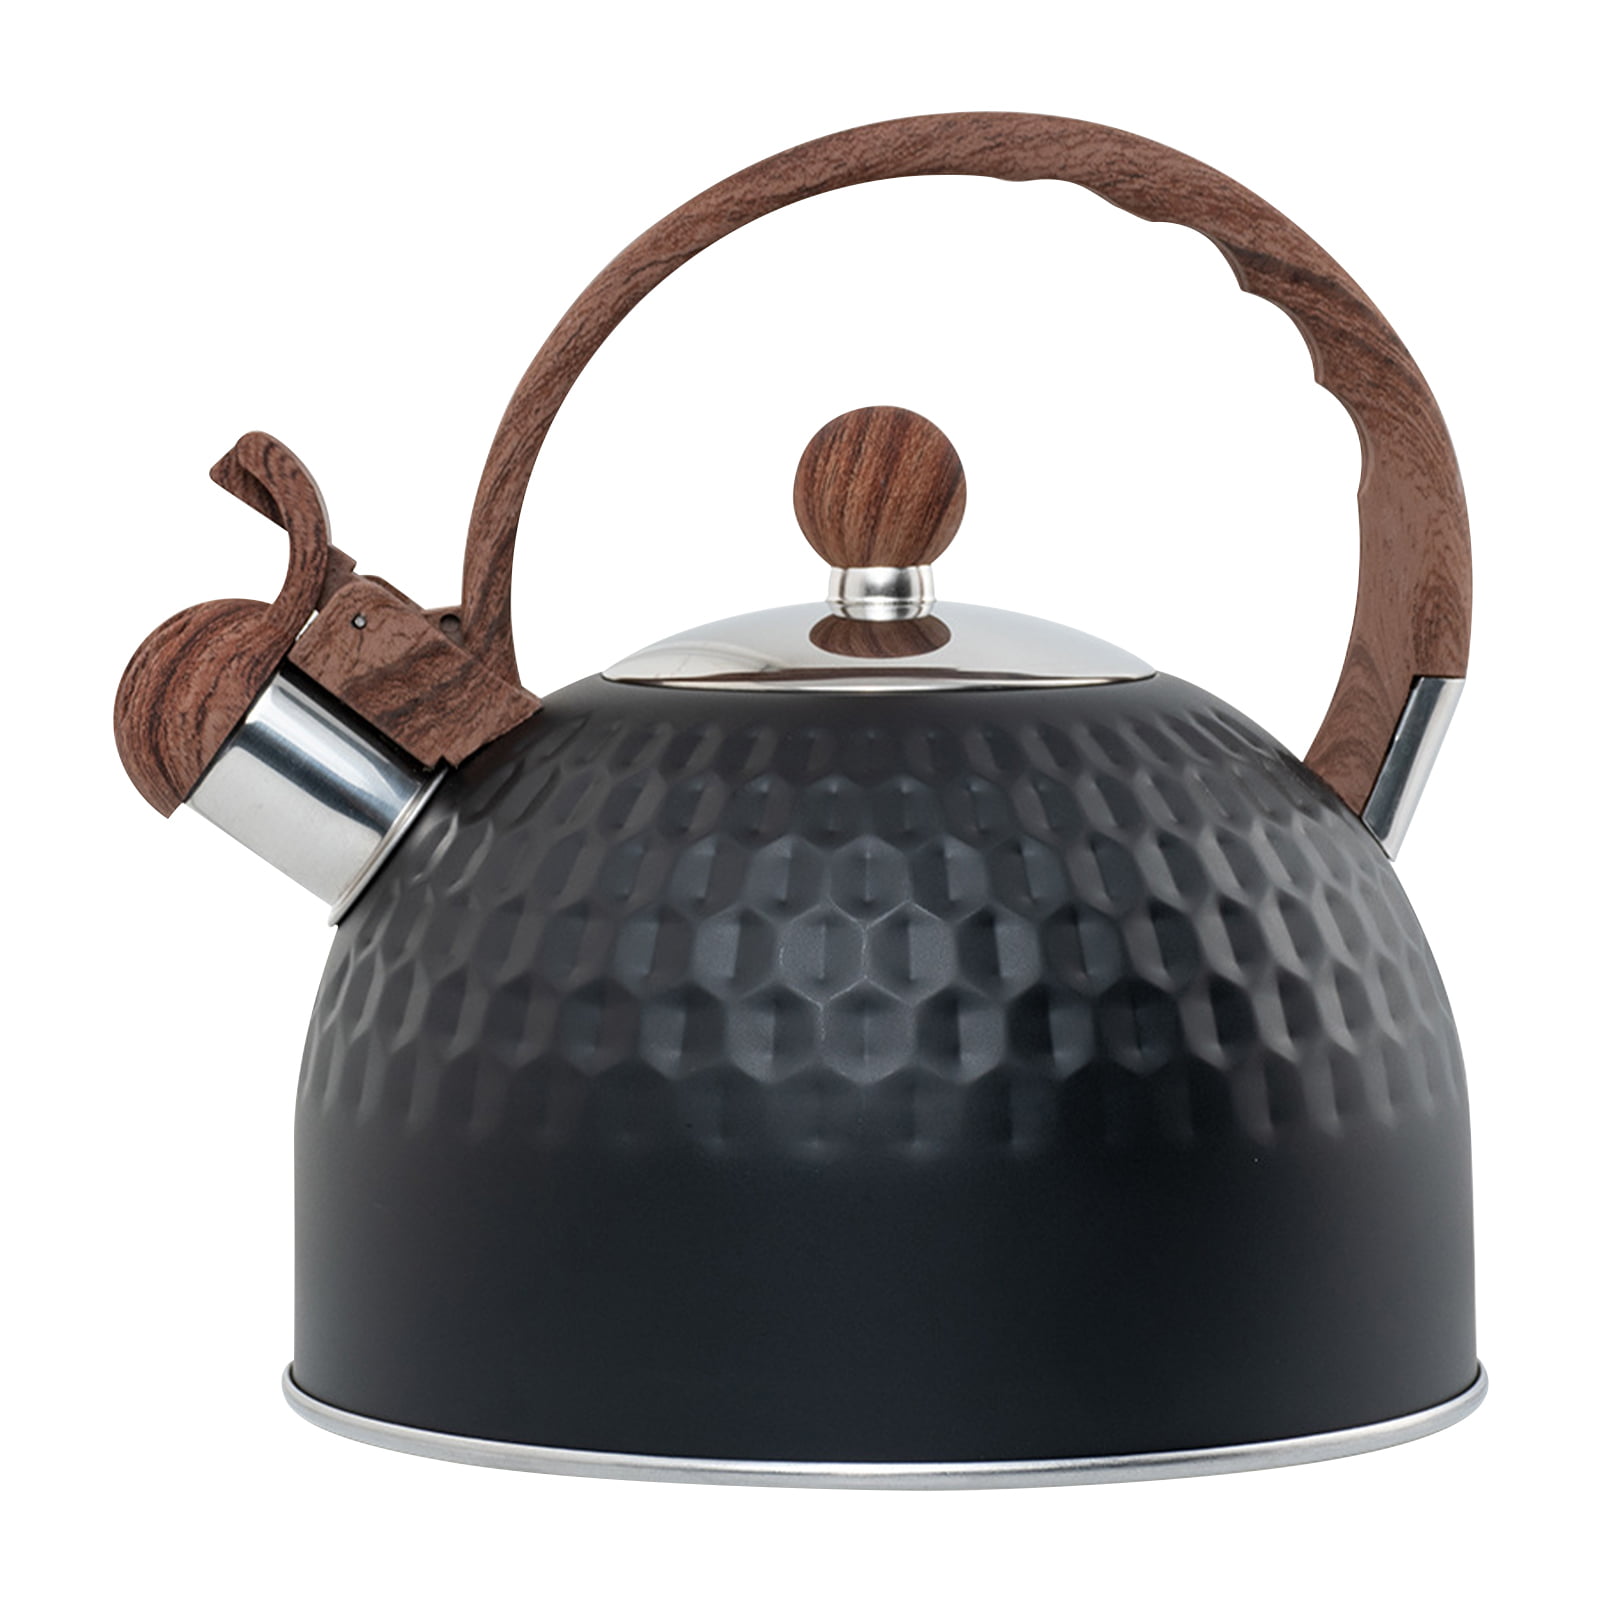 2.7 Liter Fast Heating Tea Maker Pot Stainless Steel Whistling Tea Kettle 